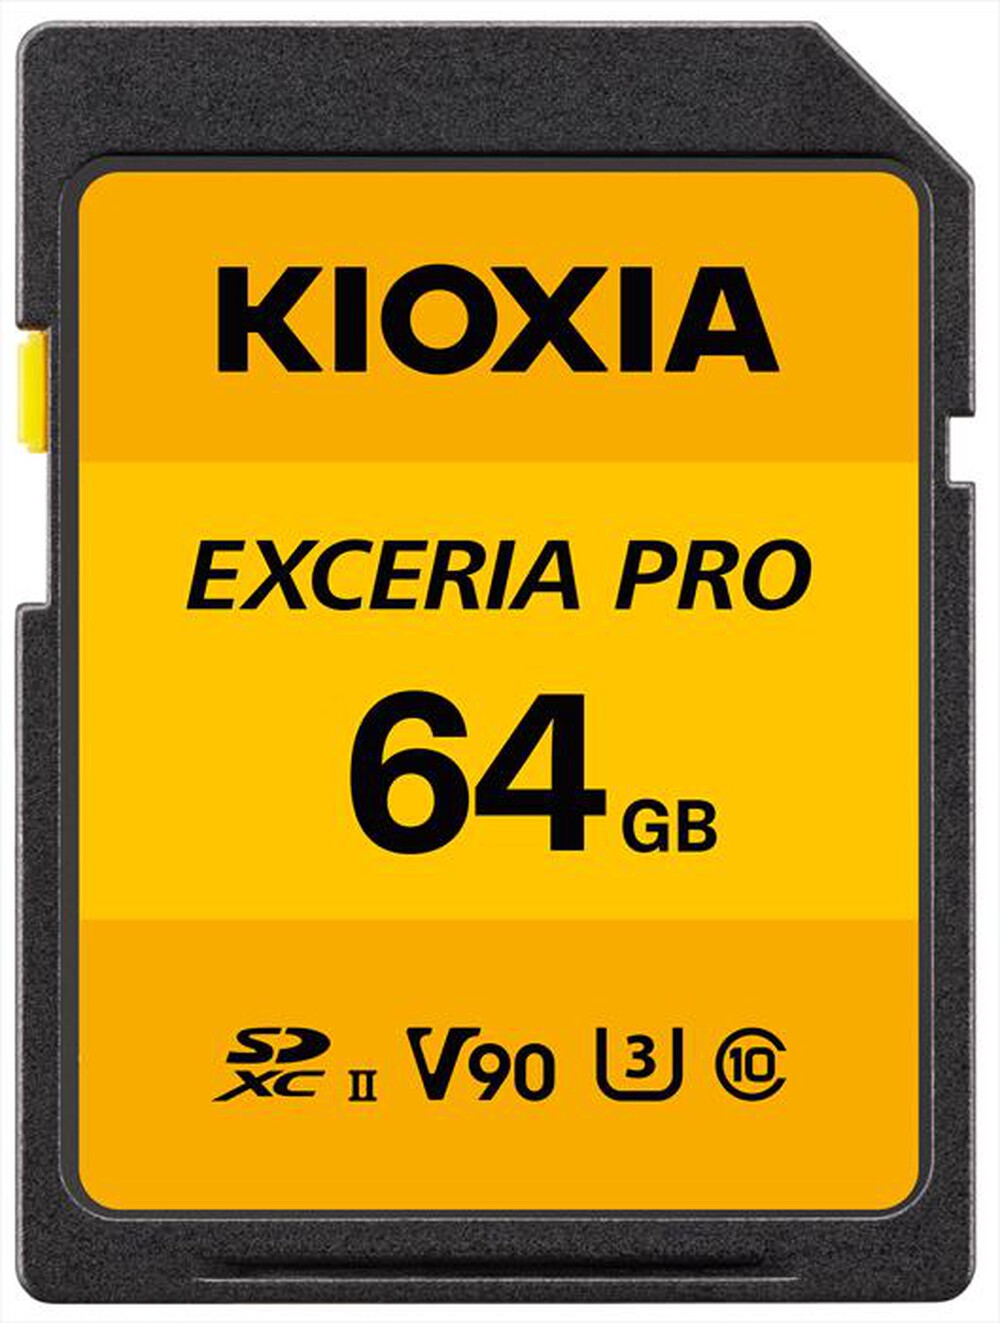 "KIOXIA - SD EXCERIA PRO NPR1 UHS-II 64GB - Giallo"